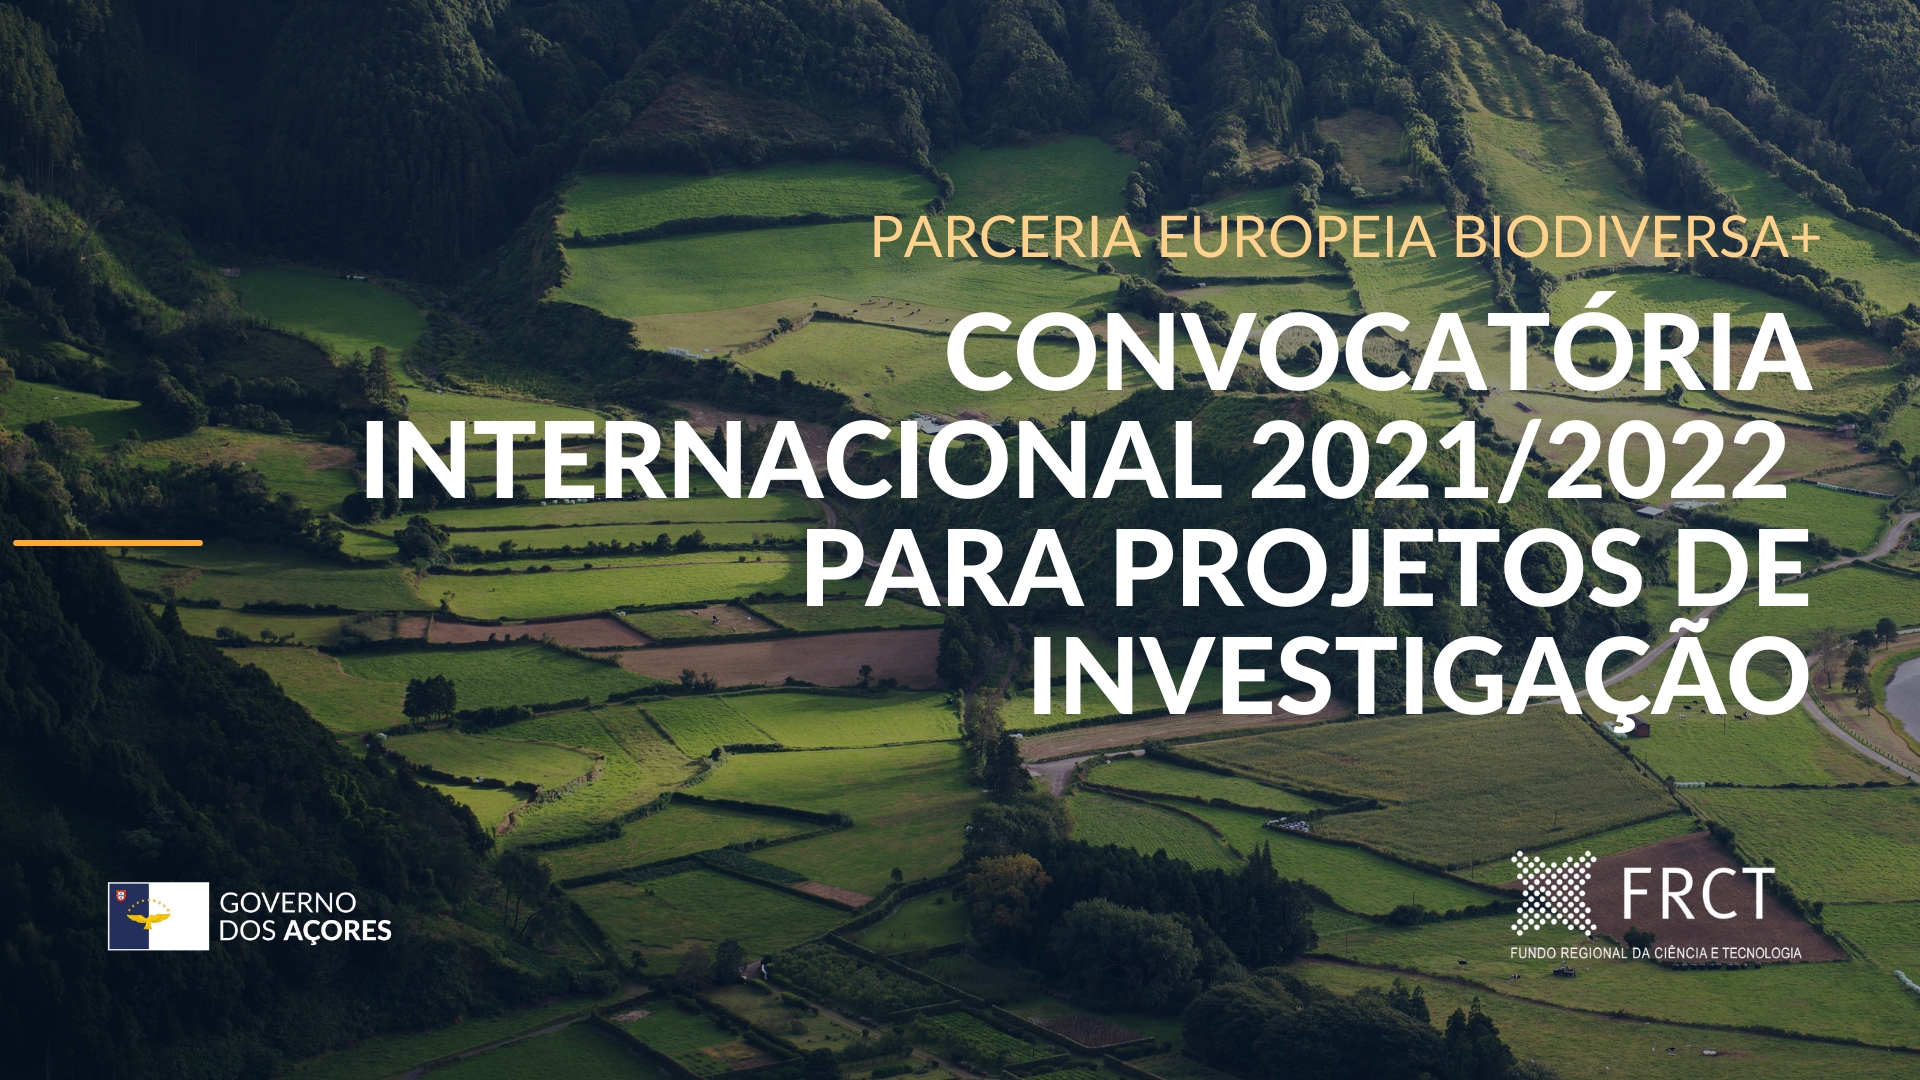 O FRCT financia a participação do Sistema Científico e Tecnológico dos Açores na primeira convocatória conjunta da Biodiversa+